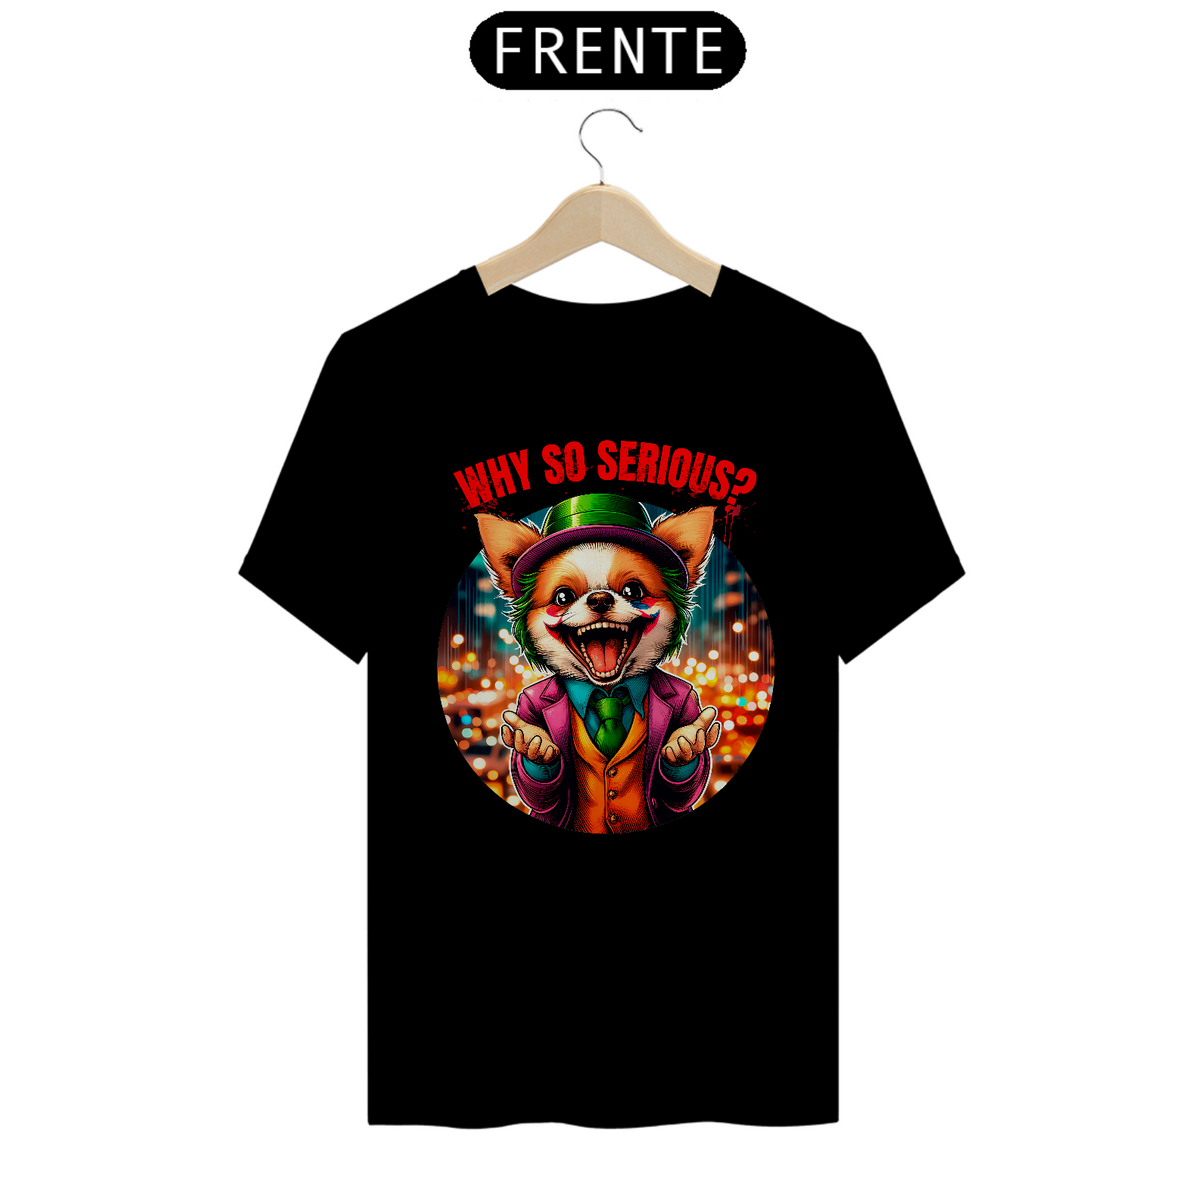 Nome do produto: Camiseta Unissex - Chihuahua O Coringa Why so serious?